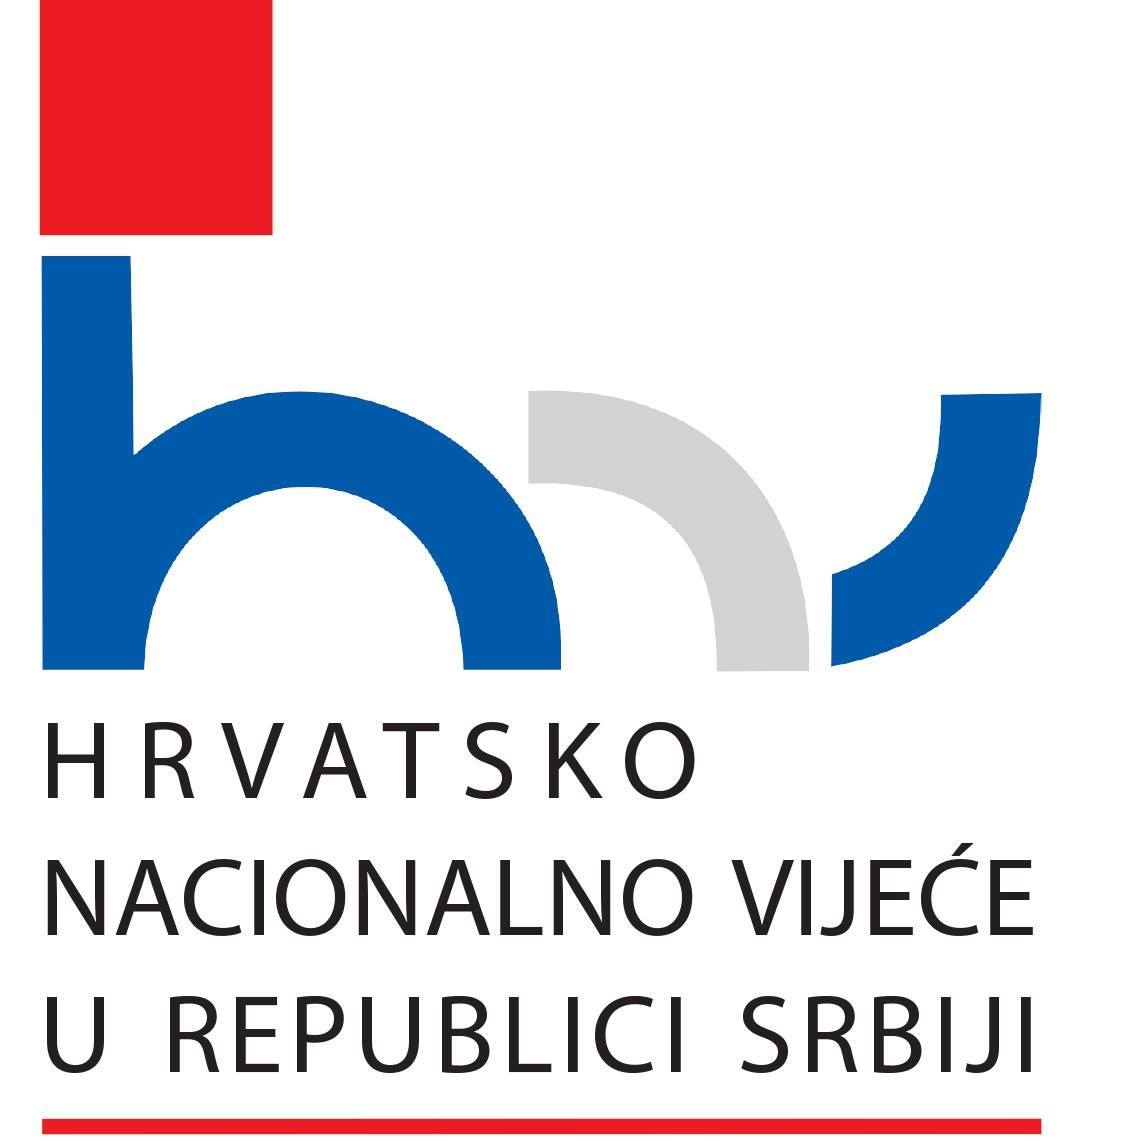 Projekat “Vijesti danas” realiziran uz potporu Pokrajinskog tajništva za kulturu, javno informiranje i odnose s vjerskim zajednicama i Hrvatskog nacionalnog vijeća u Republici Srbiji